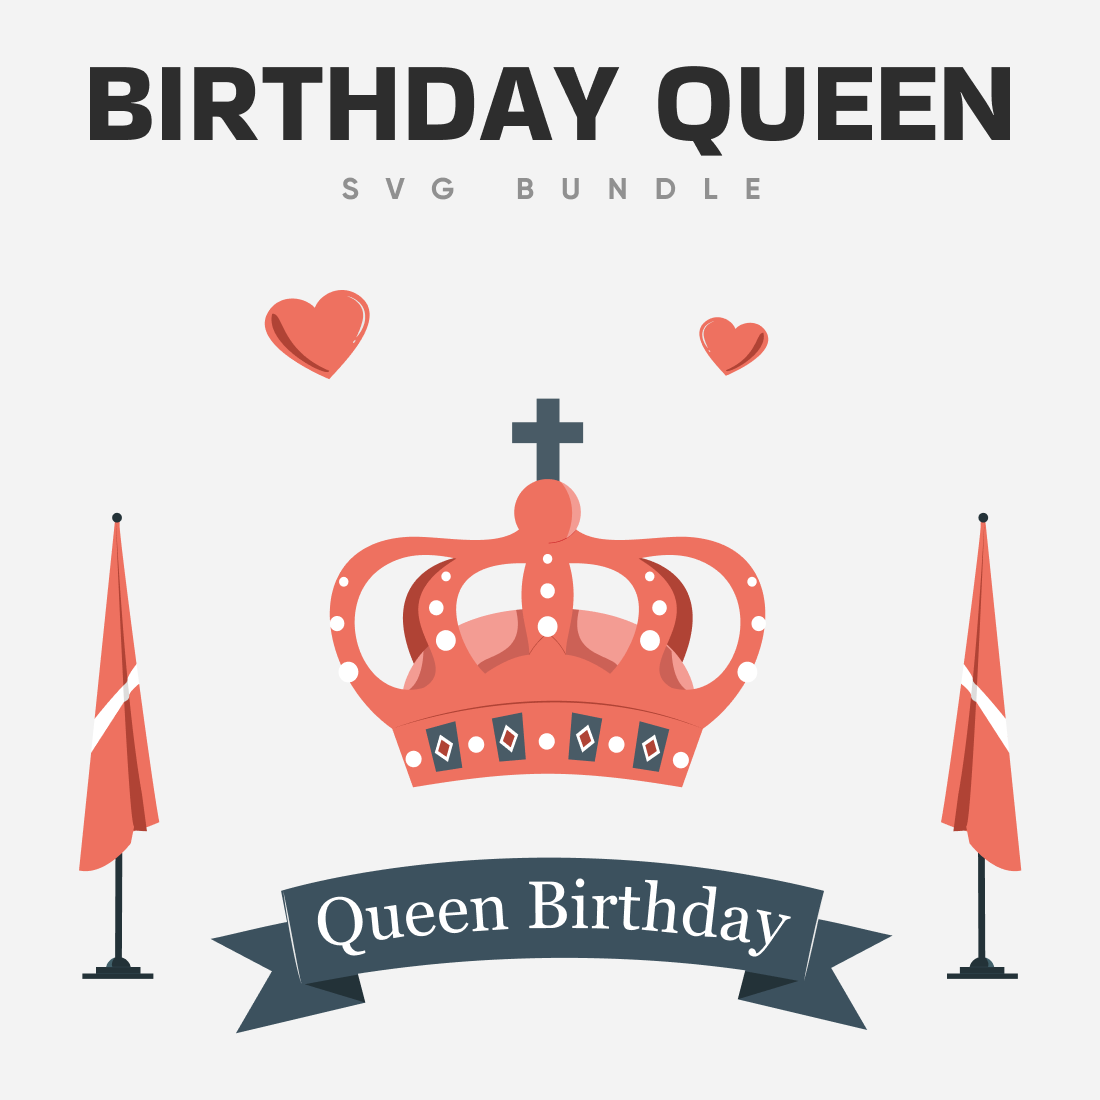 Birthday queen SVG bundle.